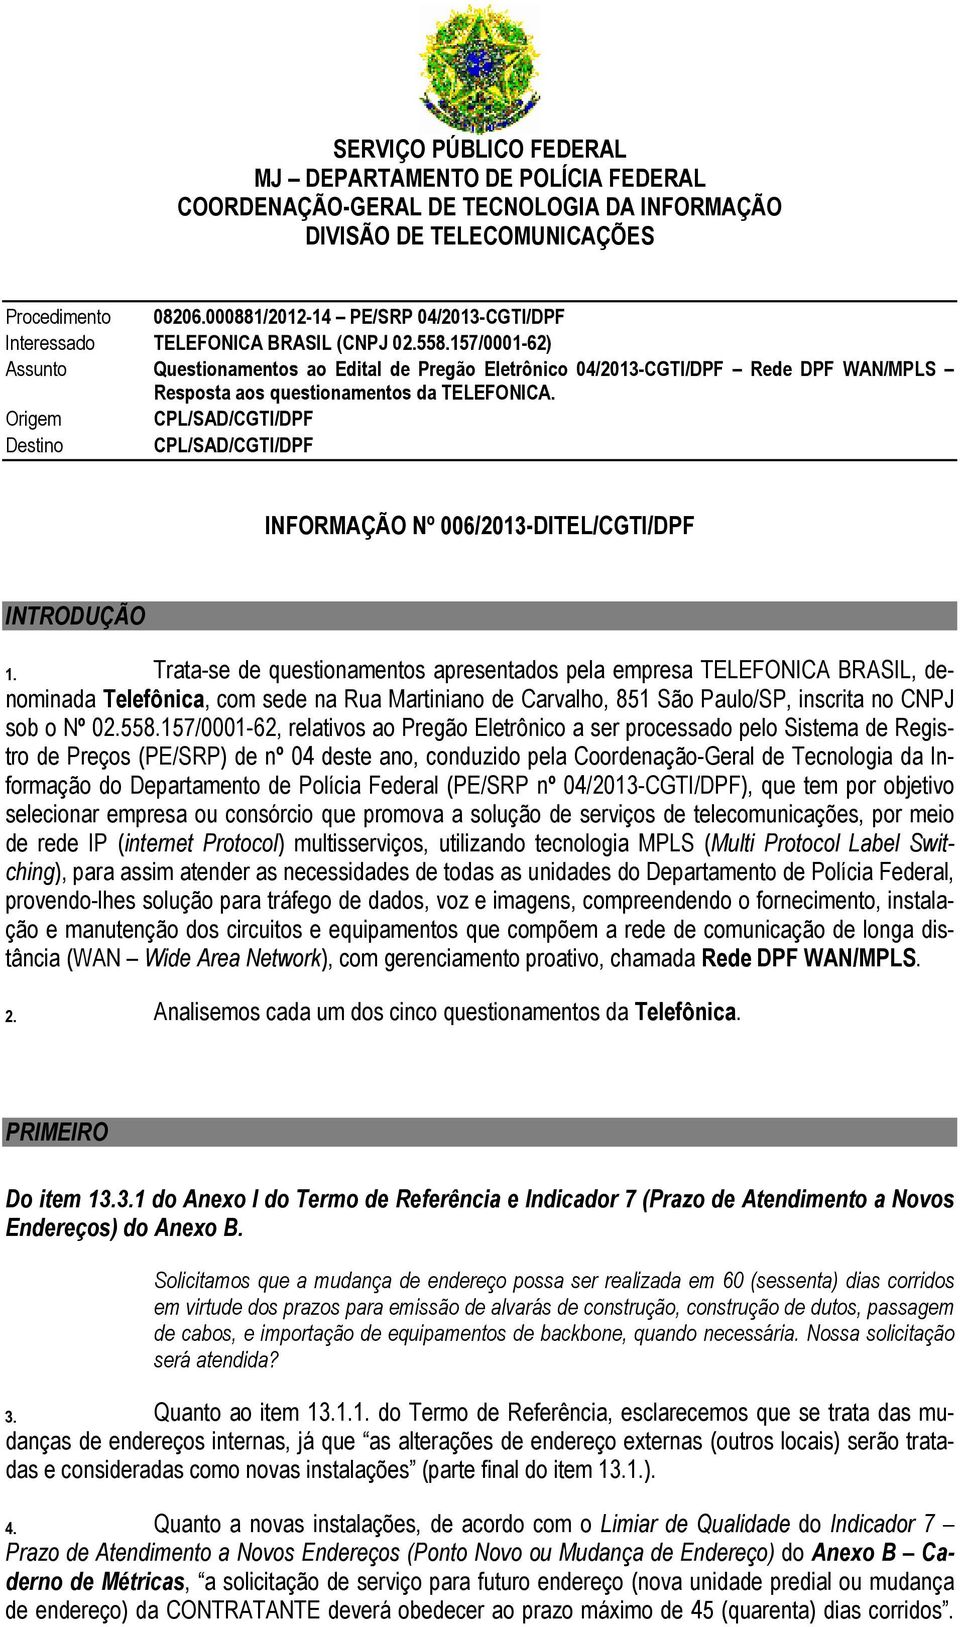 157/0001-62) Assunto Questionamentos ao Edital de Pregão Eletrônico 04/2013-CGTI/DPF Rede DPF WAN/MPLS Resposta aos questionamentos da TELEFONICA.